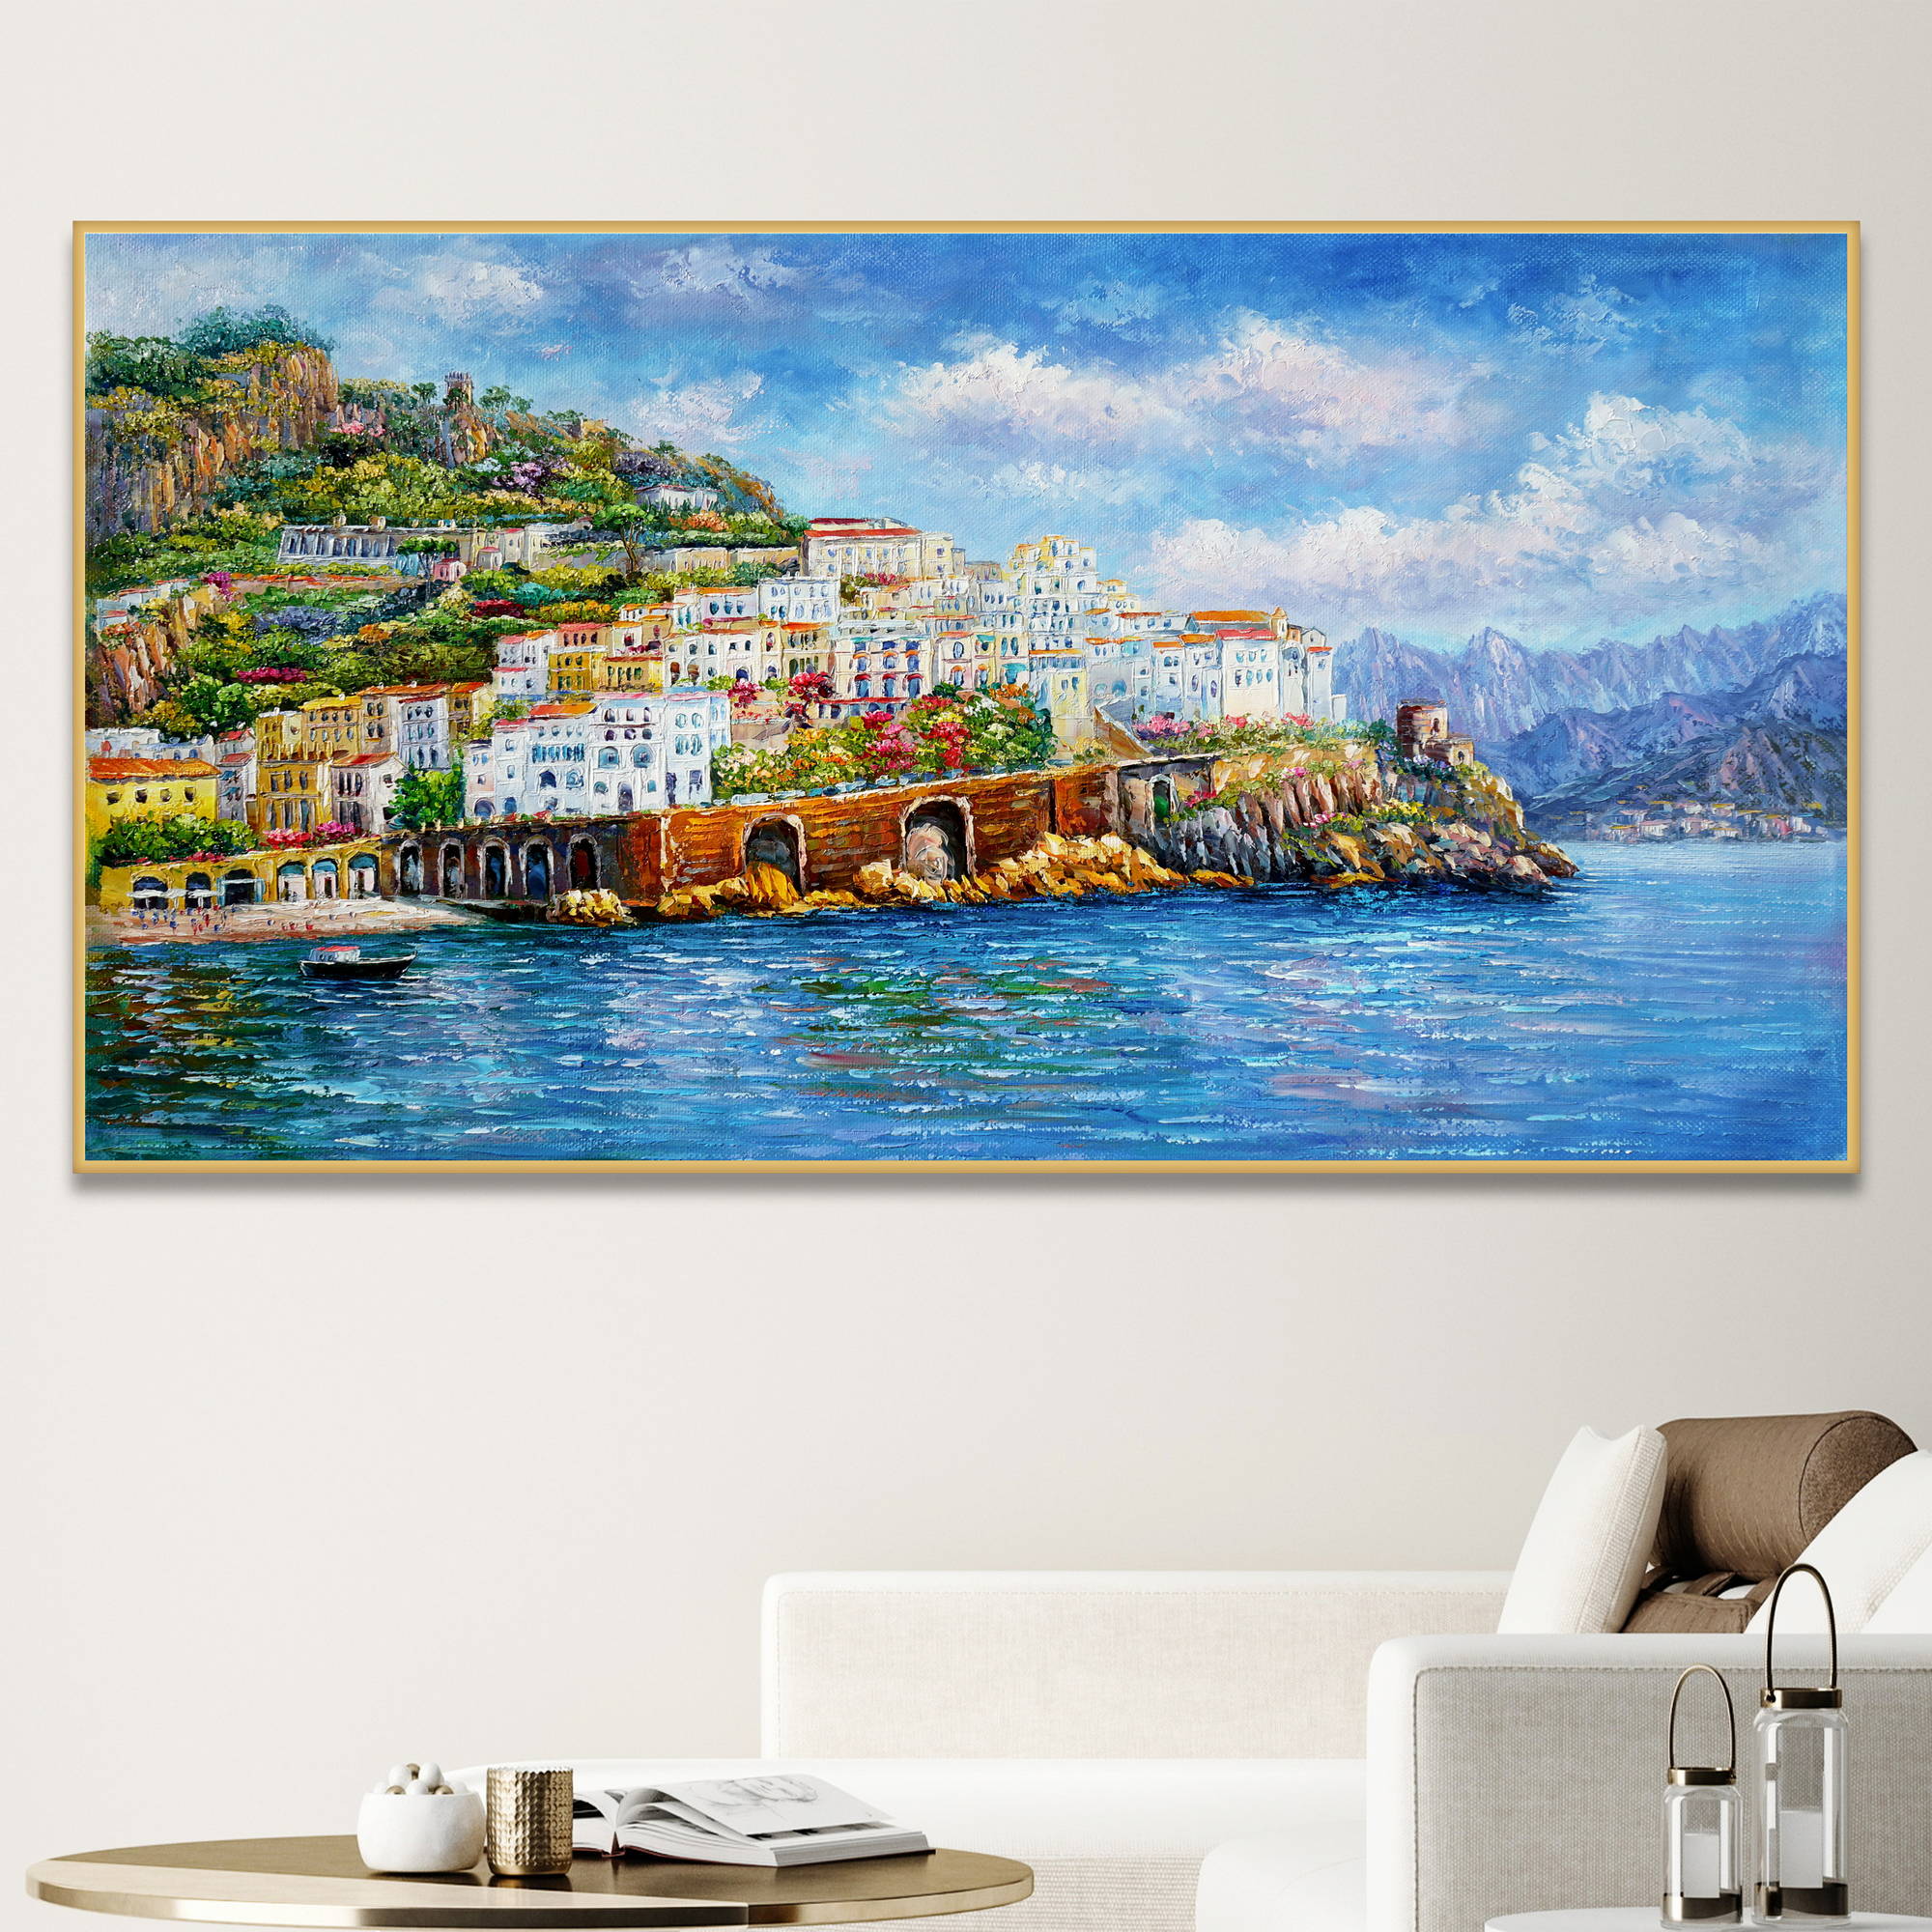 Dipinto della costiera amalfitana con gli edifici colorati di Amalfi